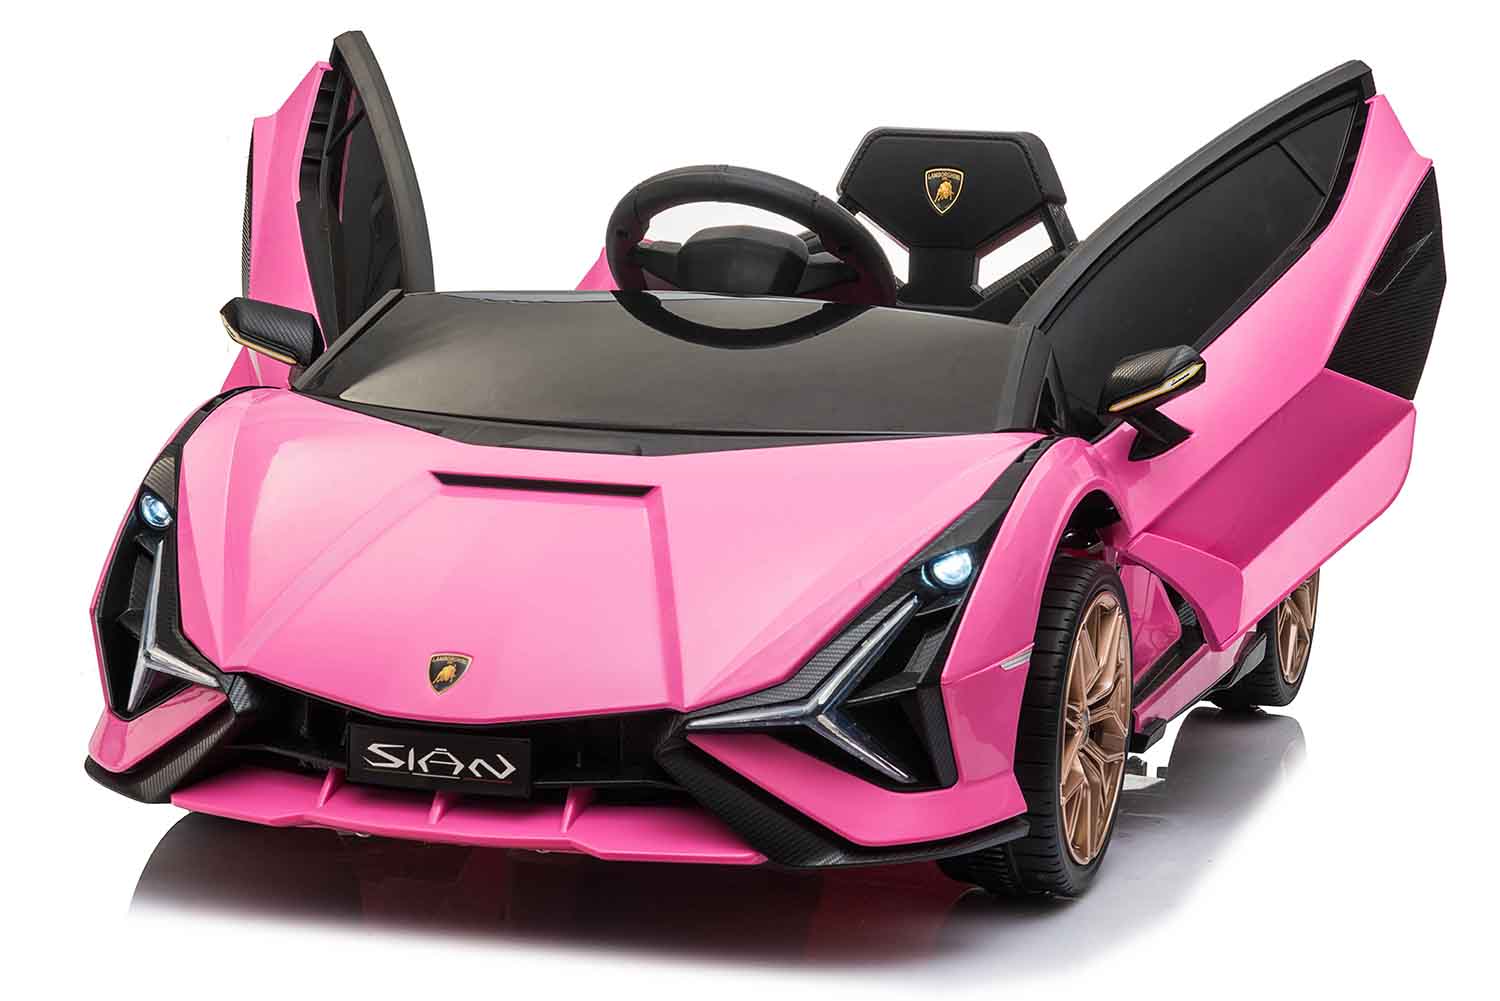 Lamborghini - Voiture enfant électrique Lamborghini Sian rose